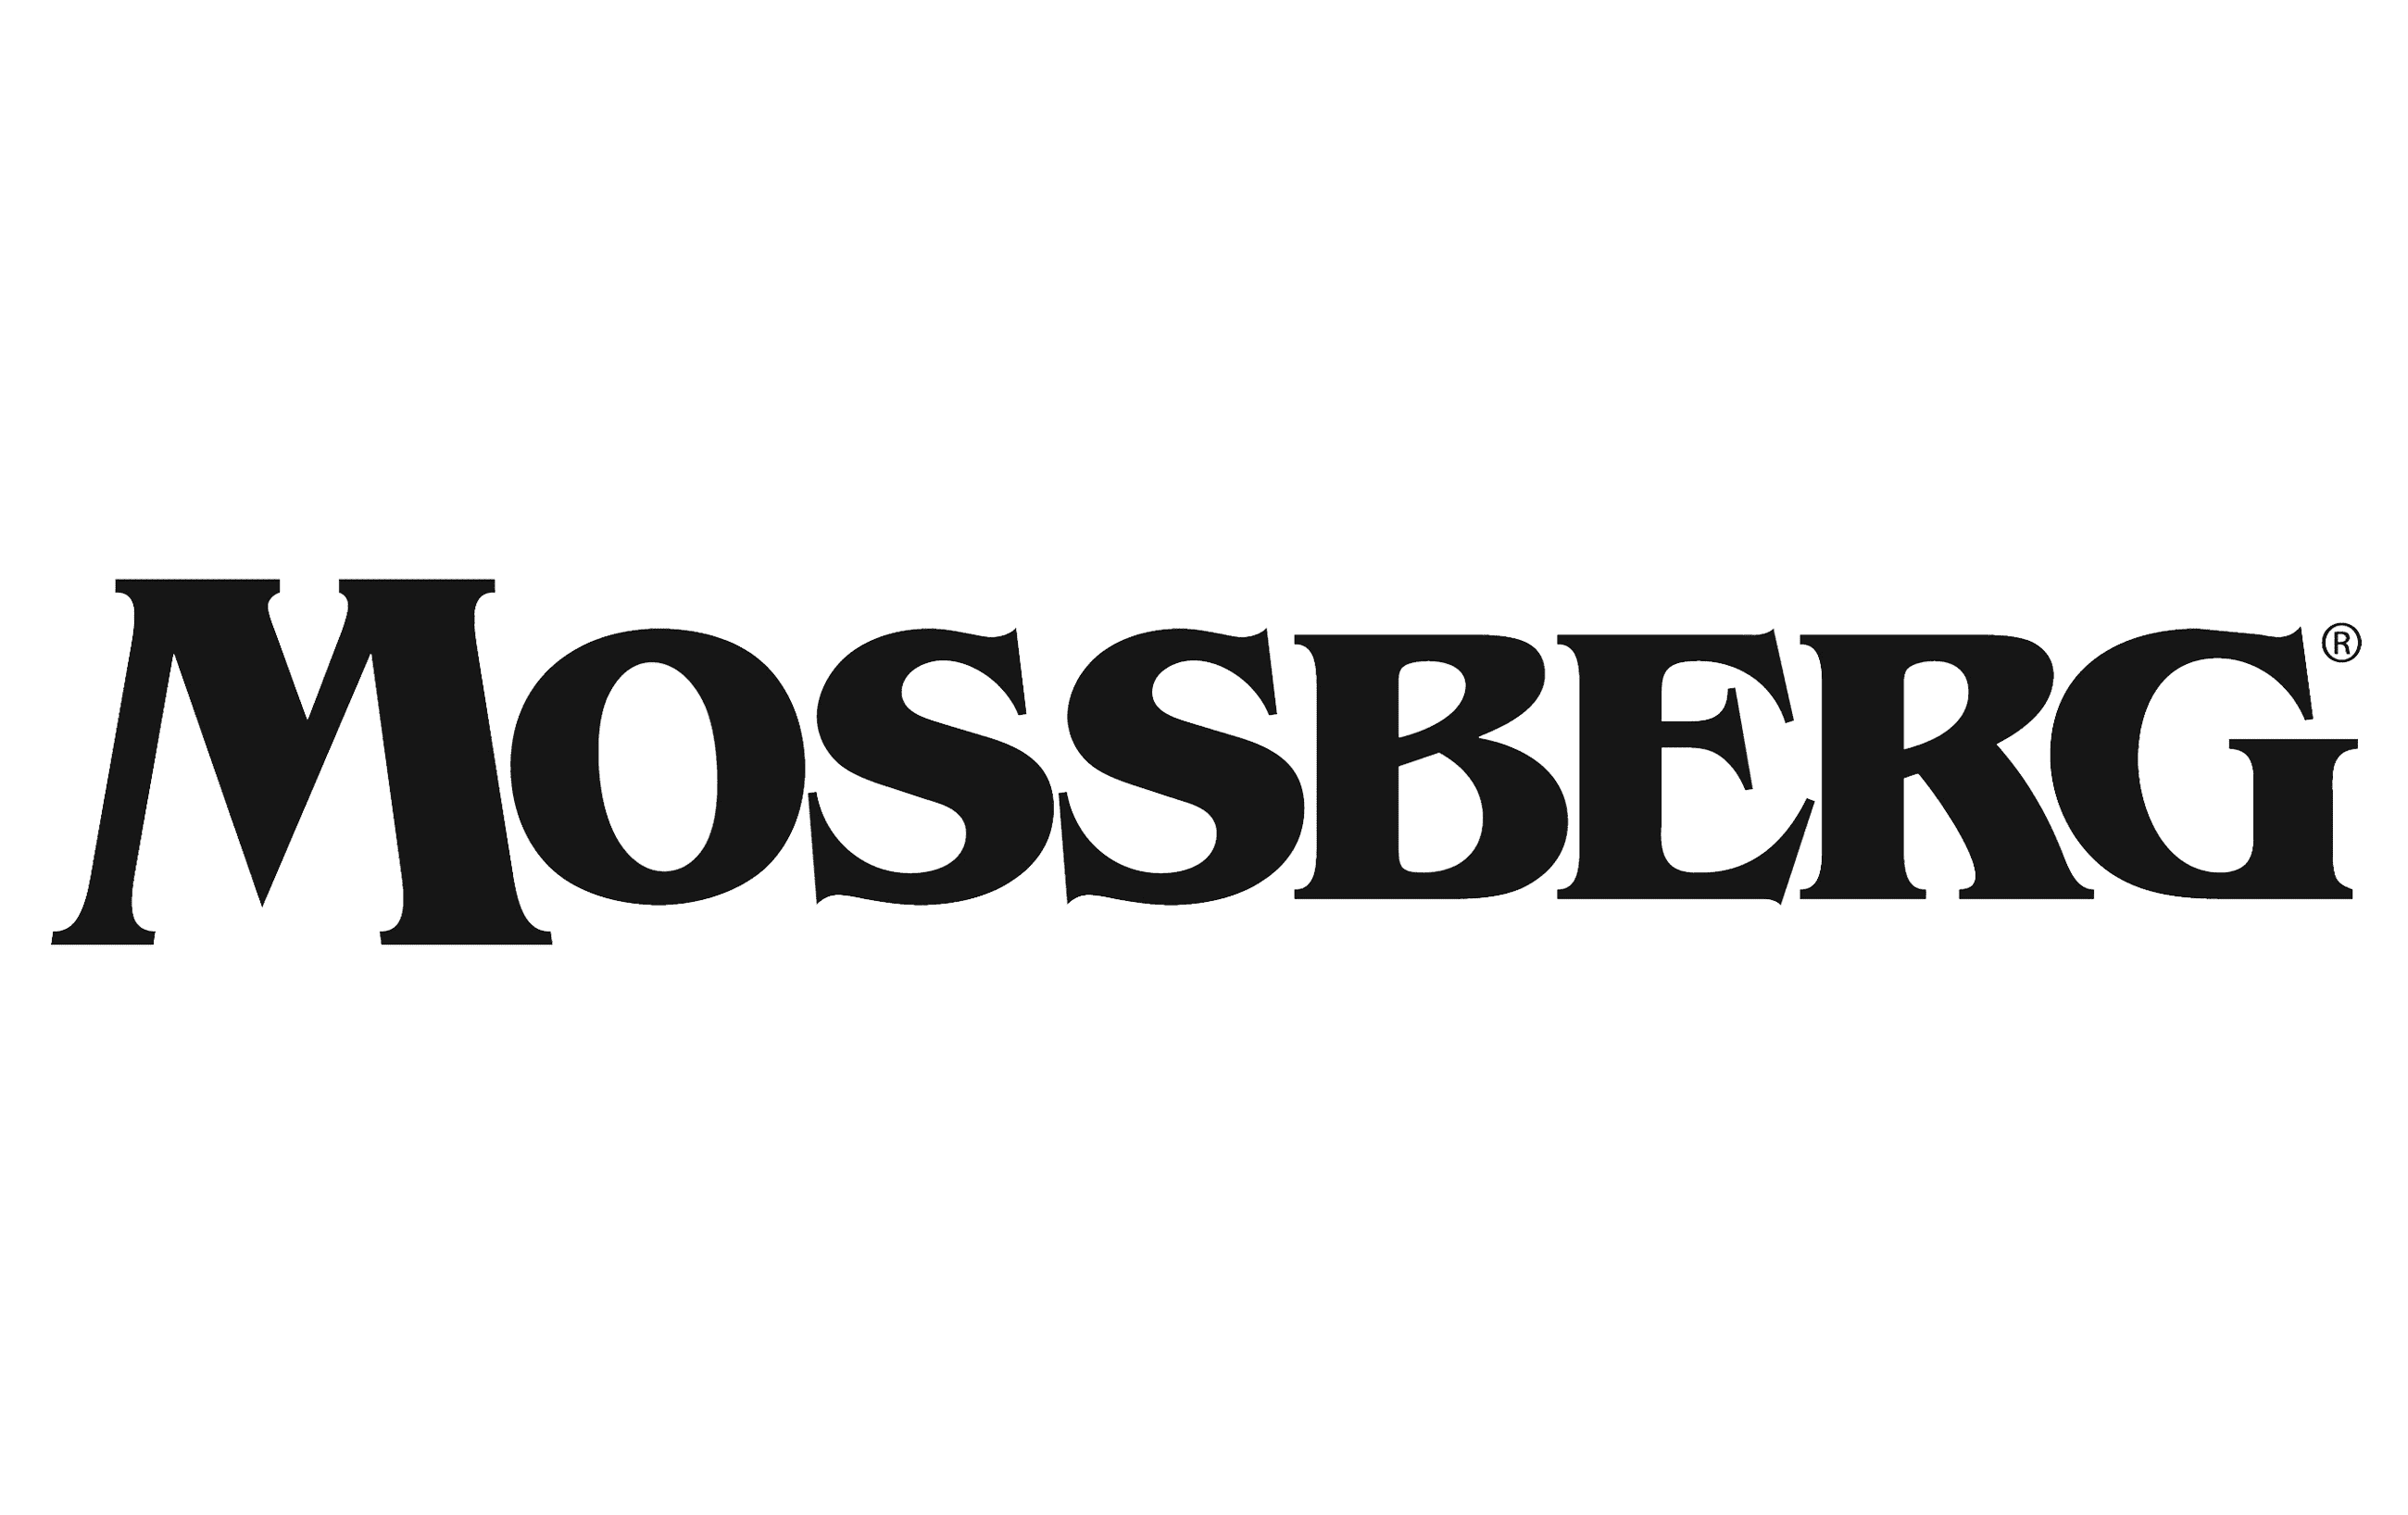 Mossberg_logo_PNG1